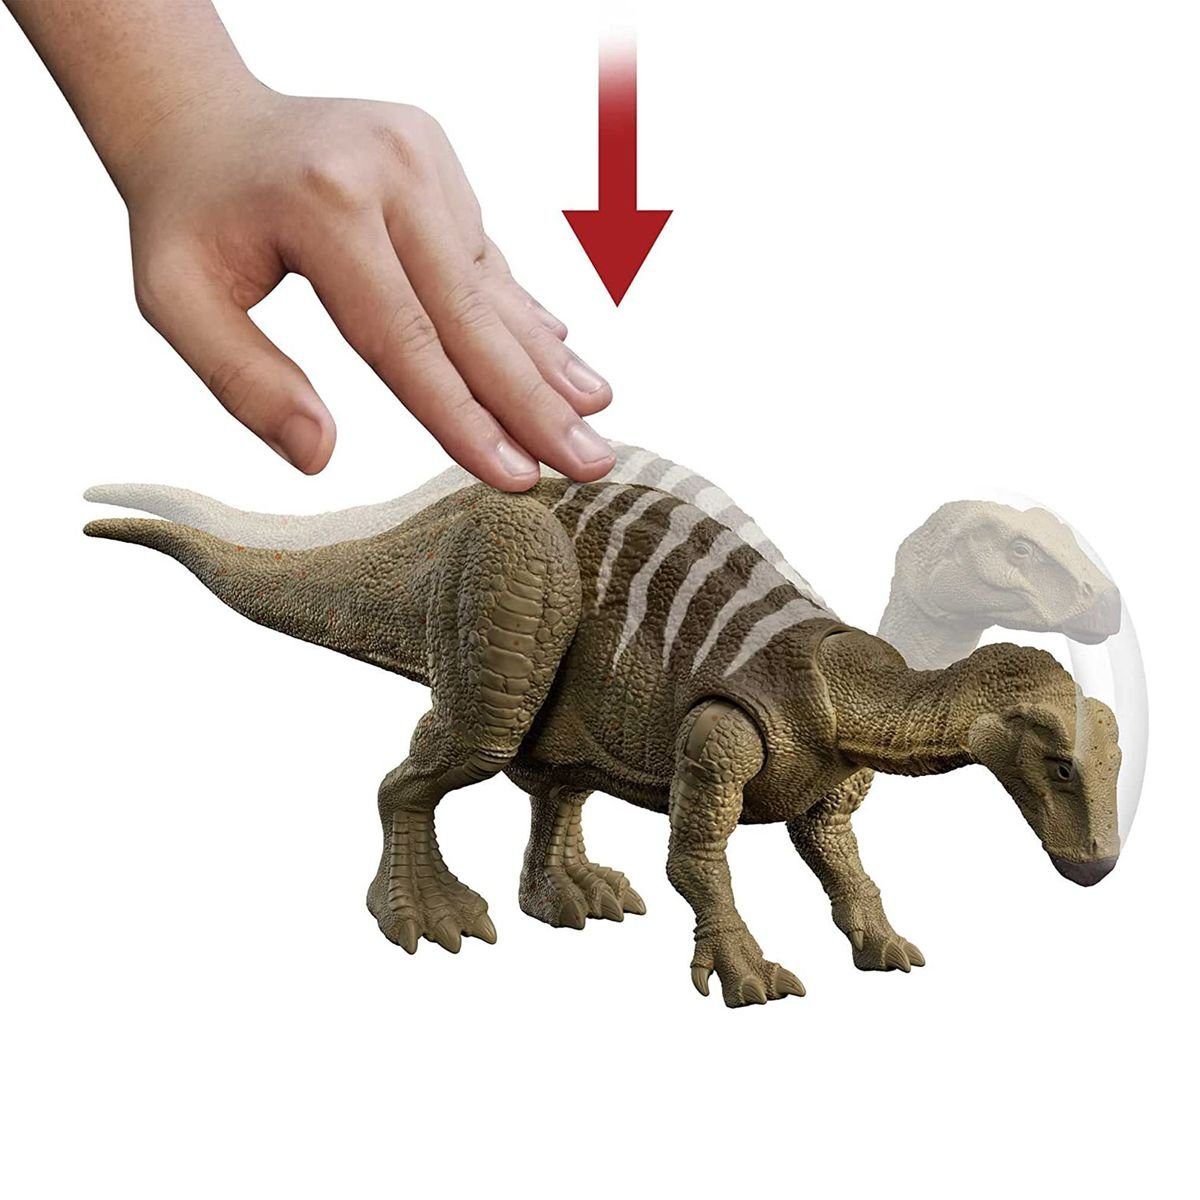 World Spielfigur - Iguanodon, Dinosaurier - Mattel® Mattel Dominion Spielfigur HDX41 - Jurassic